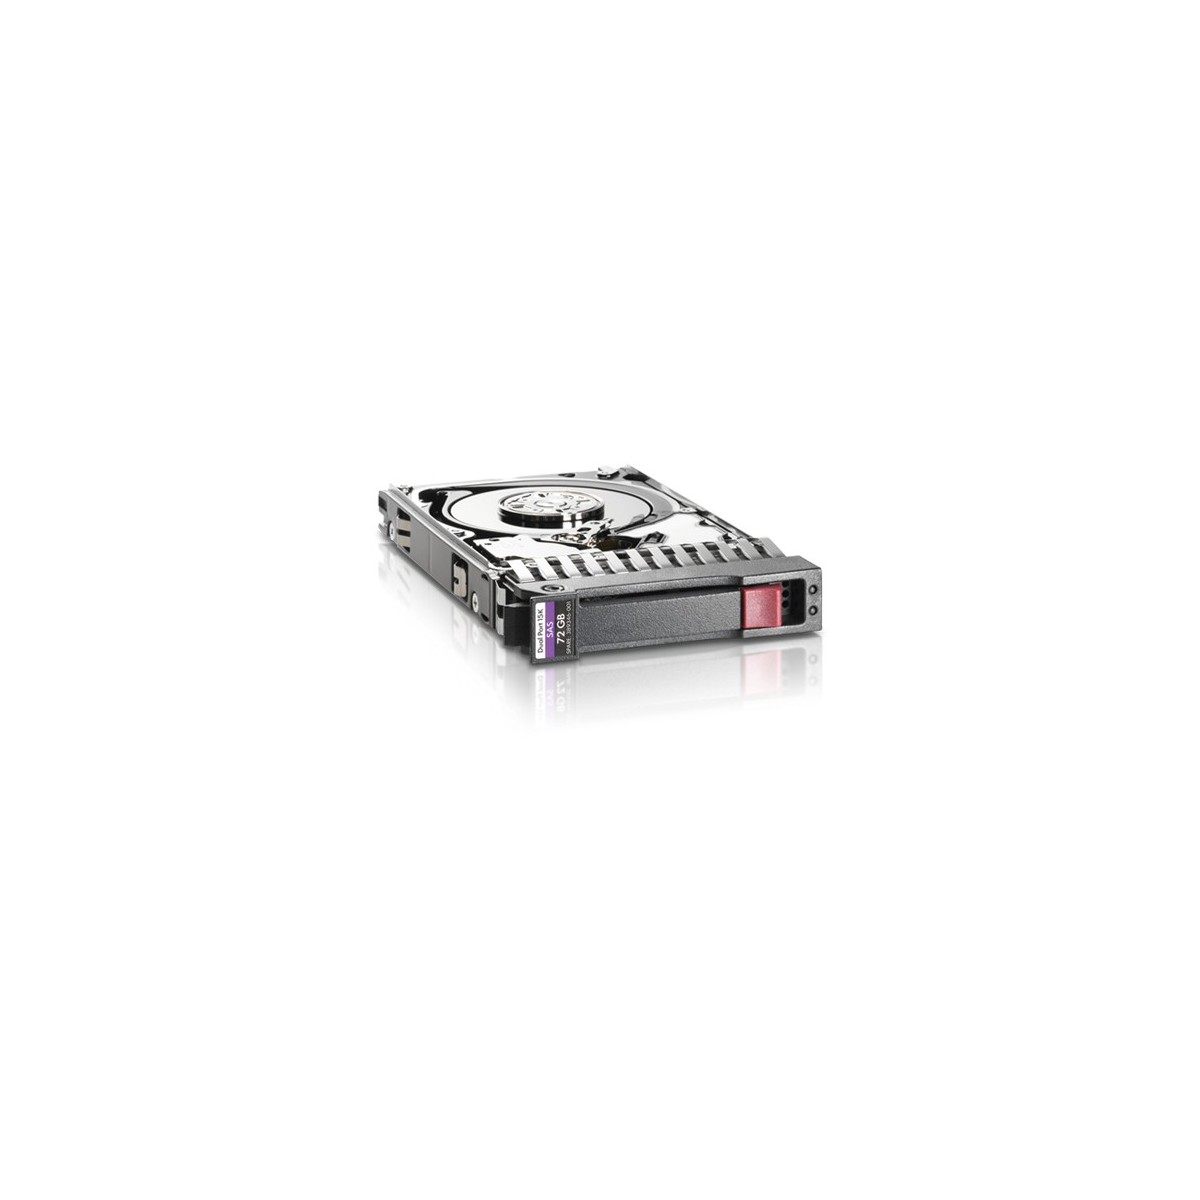 HPE 300GB 12G SAS 15K rpm SFF (2.5-inch) SC Enterprise 3yr Wty - 2.5" - 300 GB - 15000 RPM